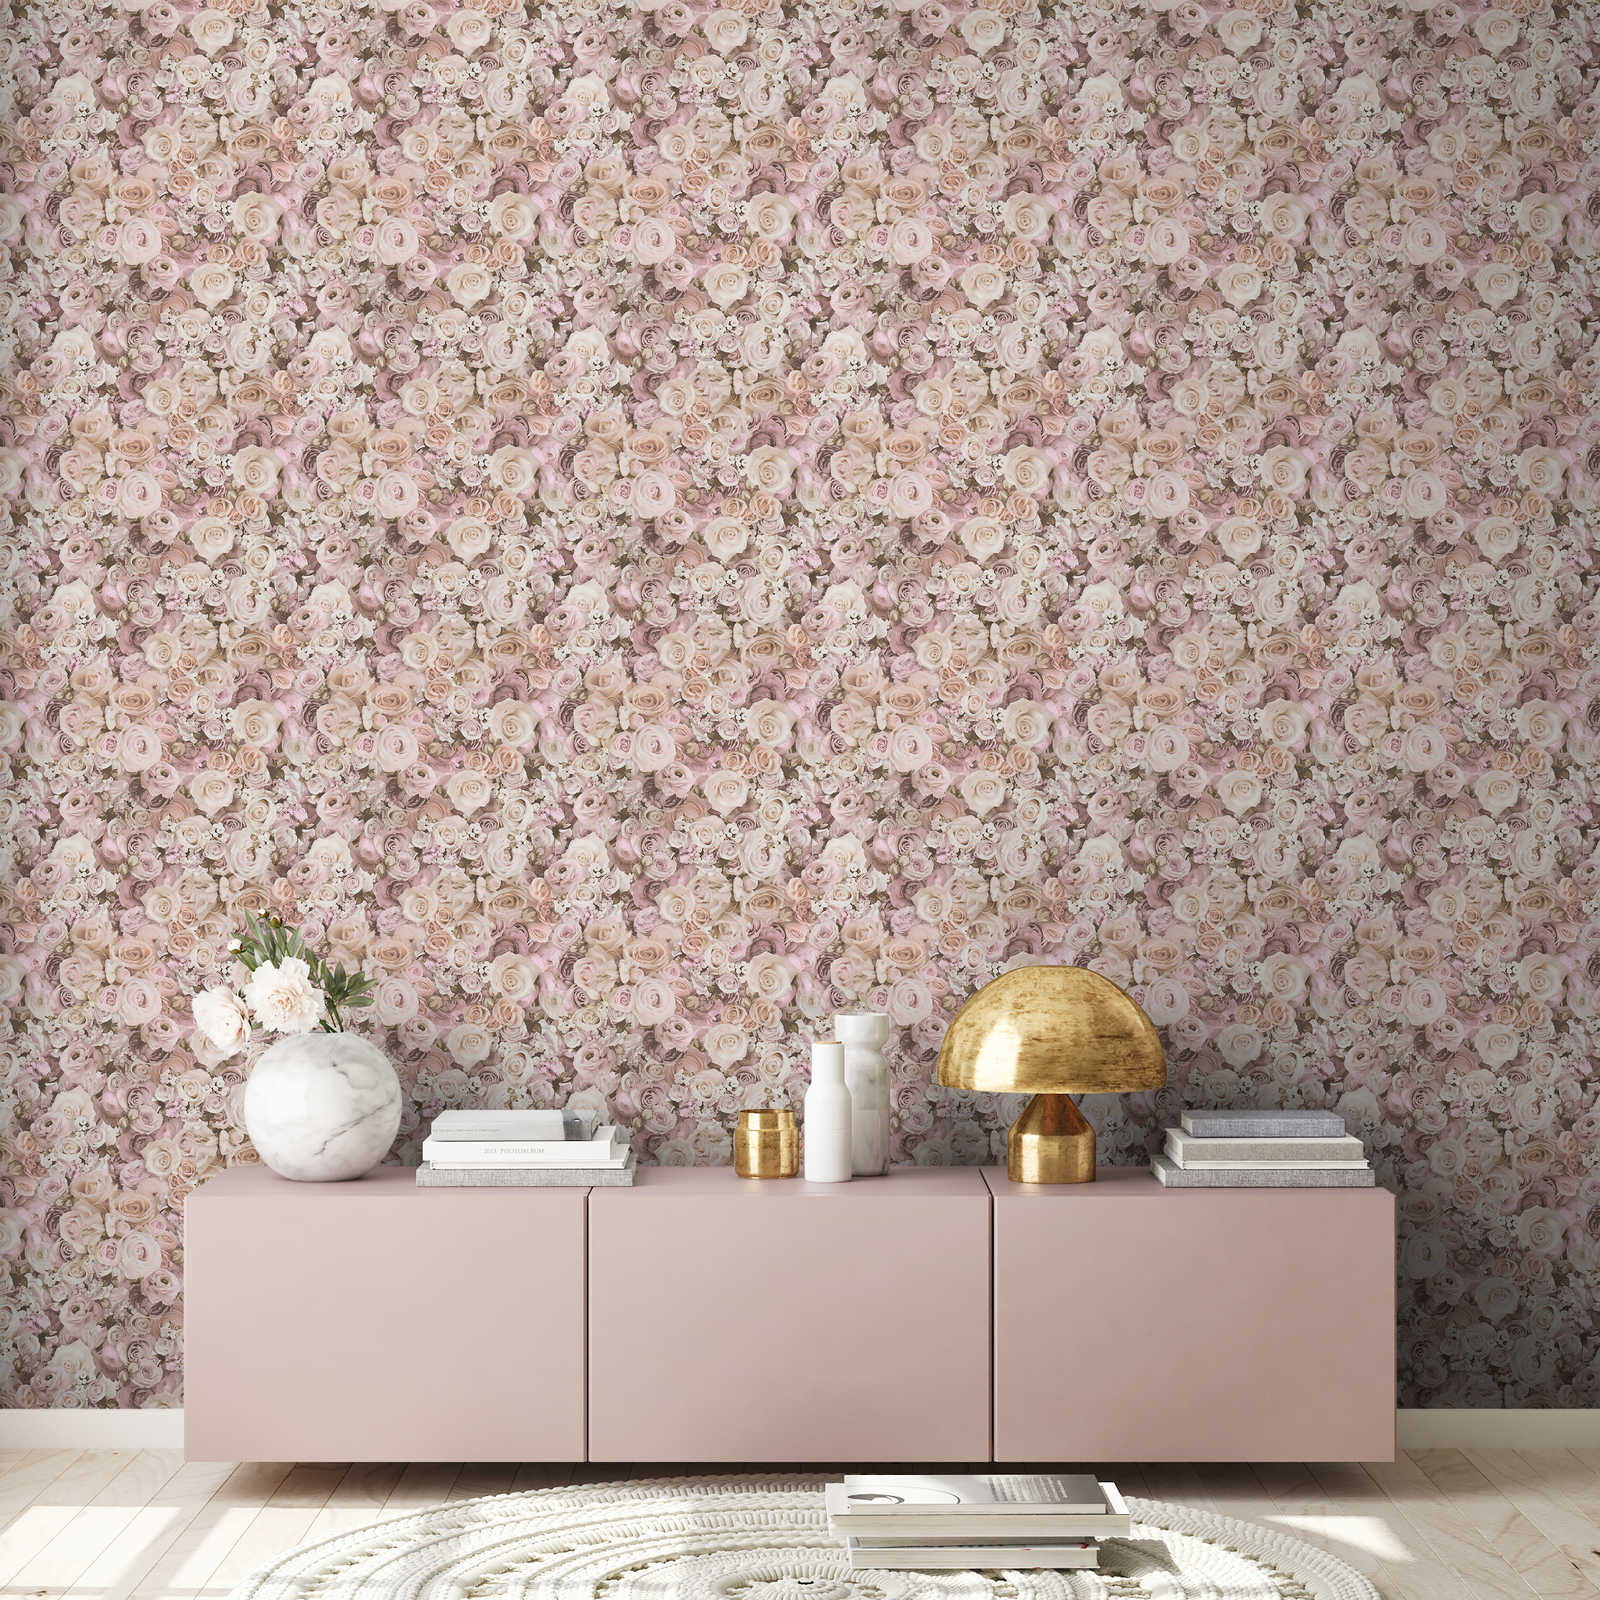             Zelfklevend behang | bloemenpatroon met rozen - roze, crème
        